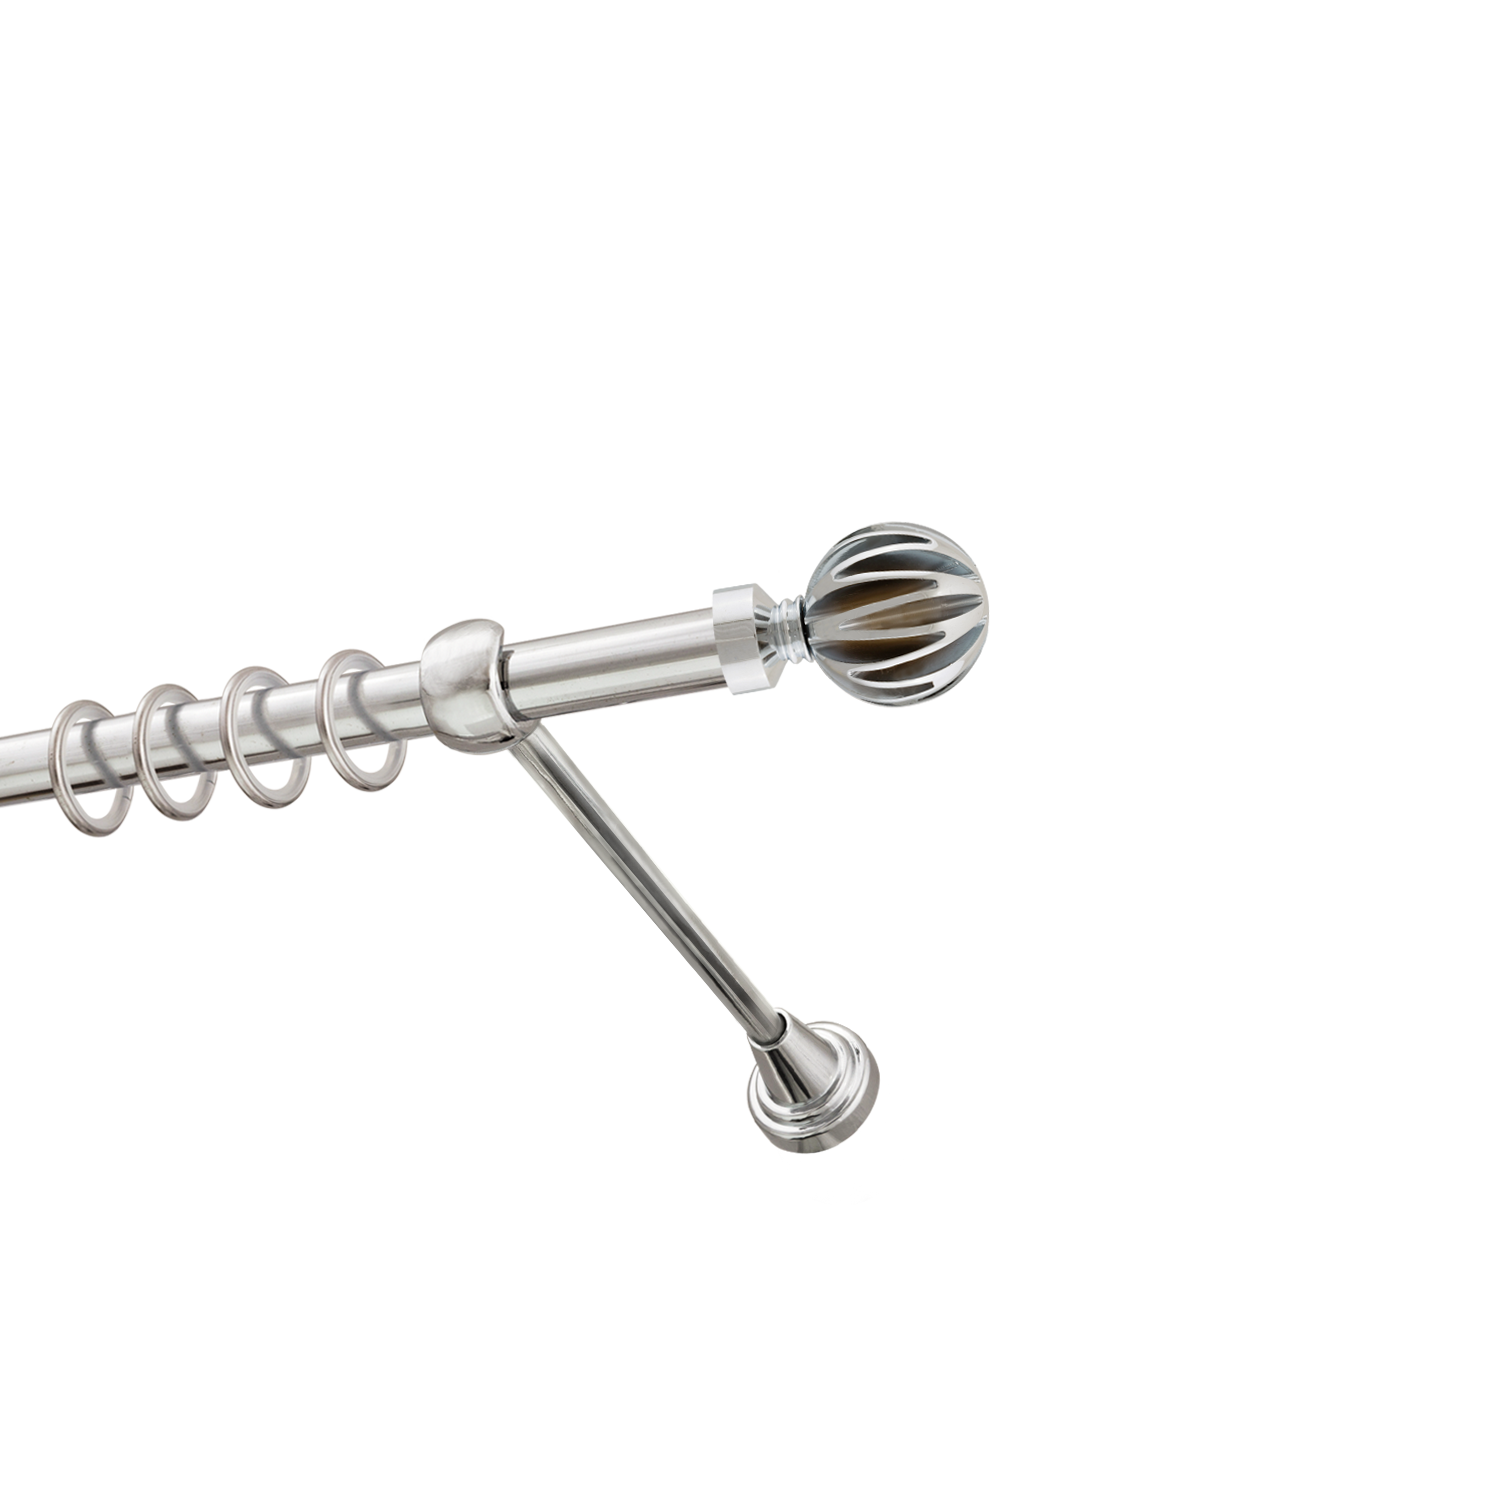 Металлический карниз для штор Шафран, однорядный 16 мм, серебро, гладкая штанга, длина 240 см - фото Wikidecor.ru